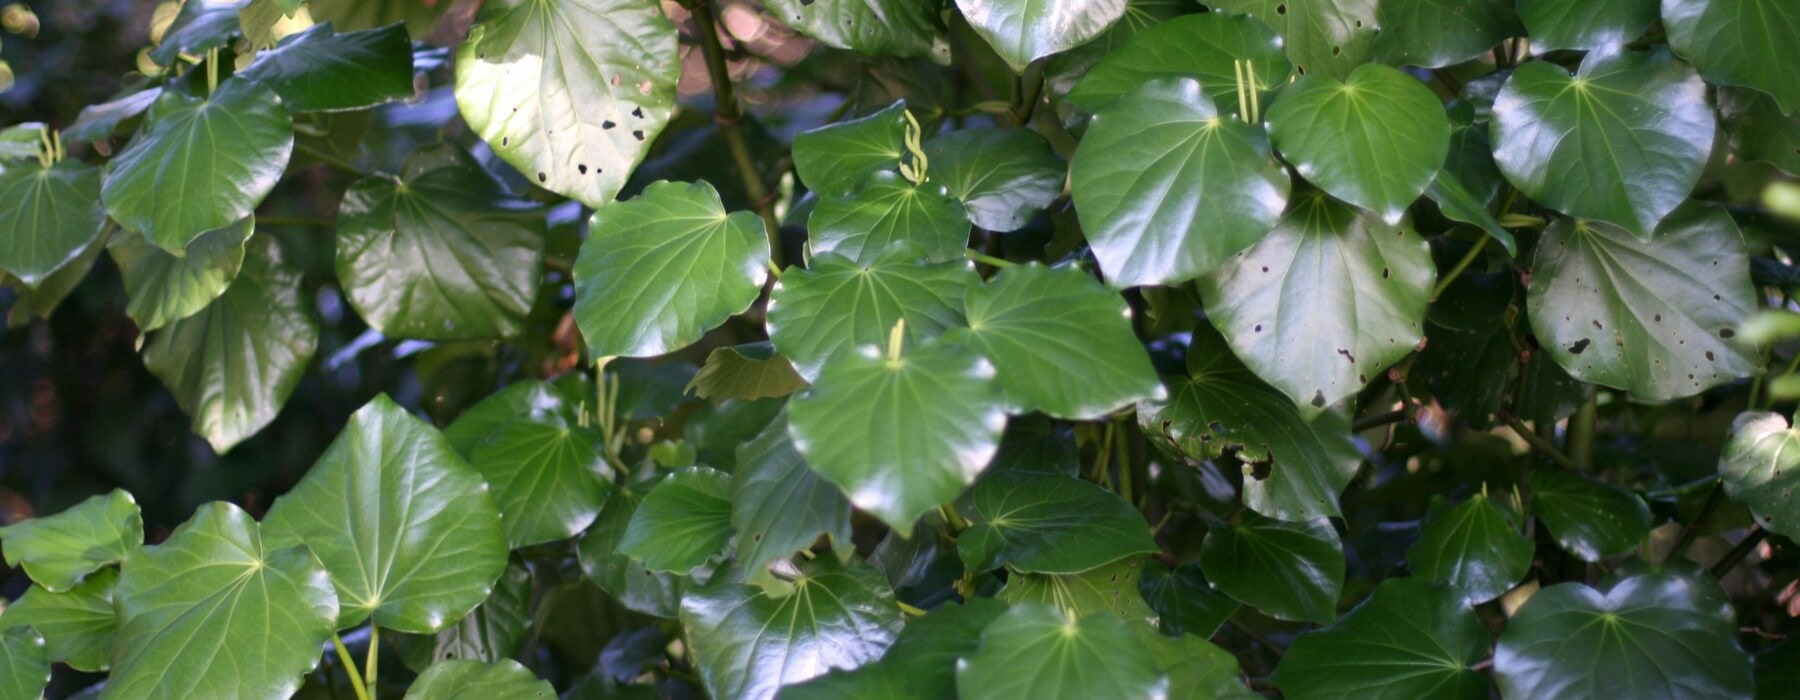 Kawakawa plant leaves